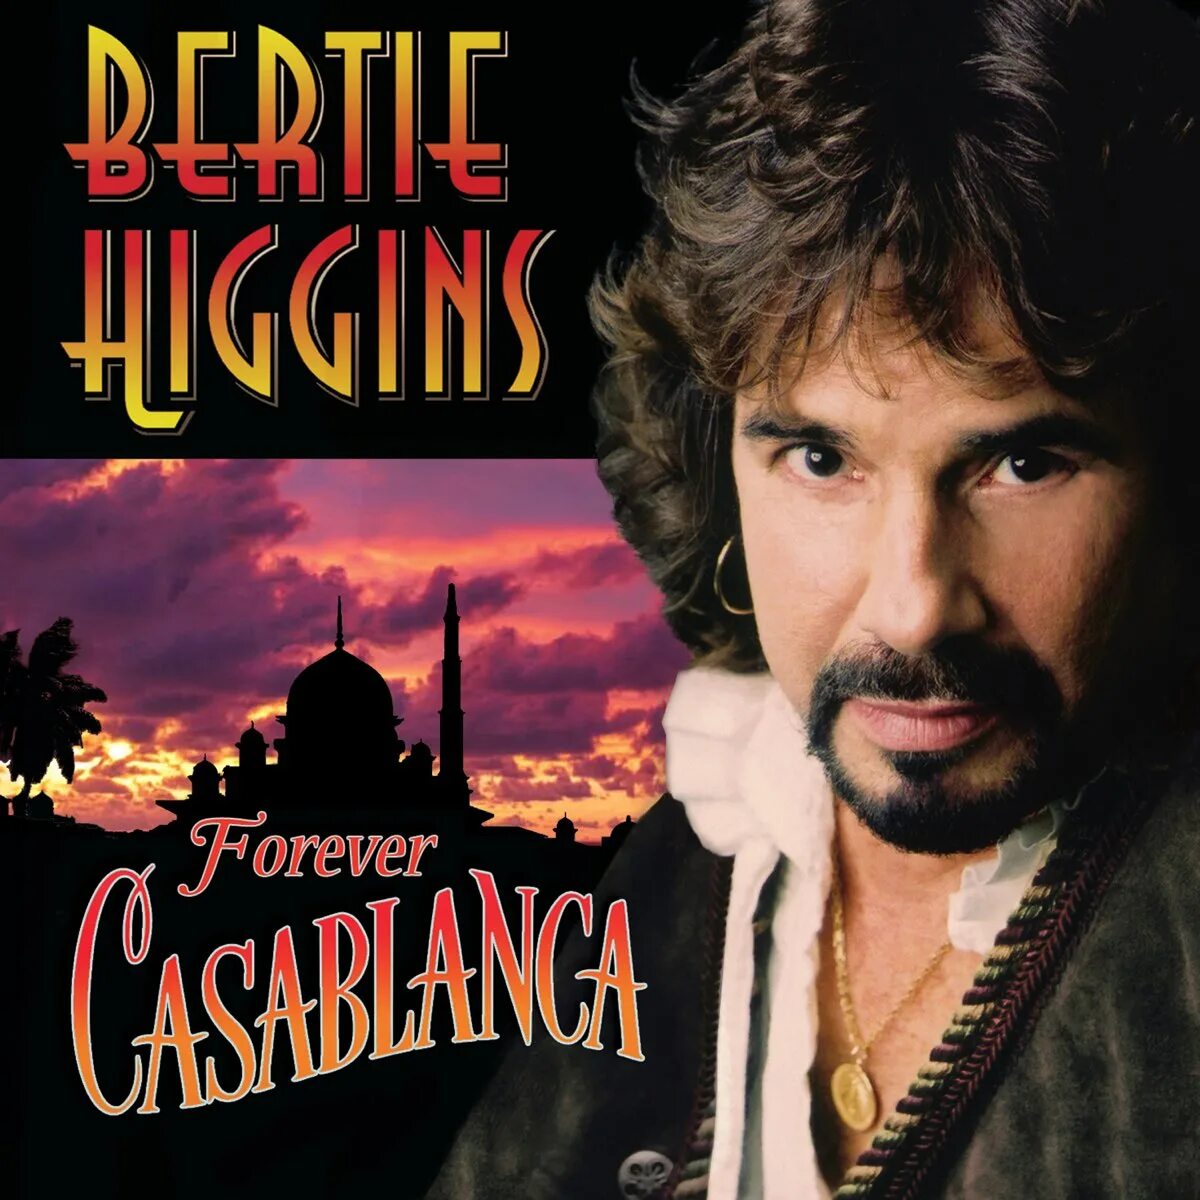 Песня касабланка mp3. Bertie Higgins. Берт Хиггинс Касабланка. Bertie Higgins - Casablanca альбом обложка. Берти Хиггинс Касабланка слушать.